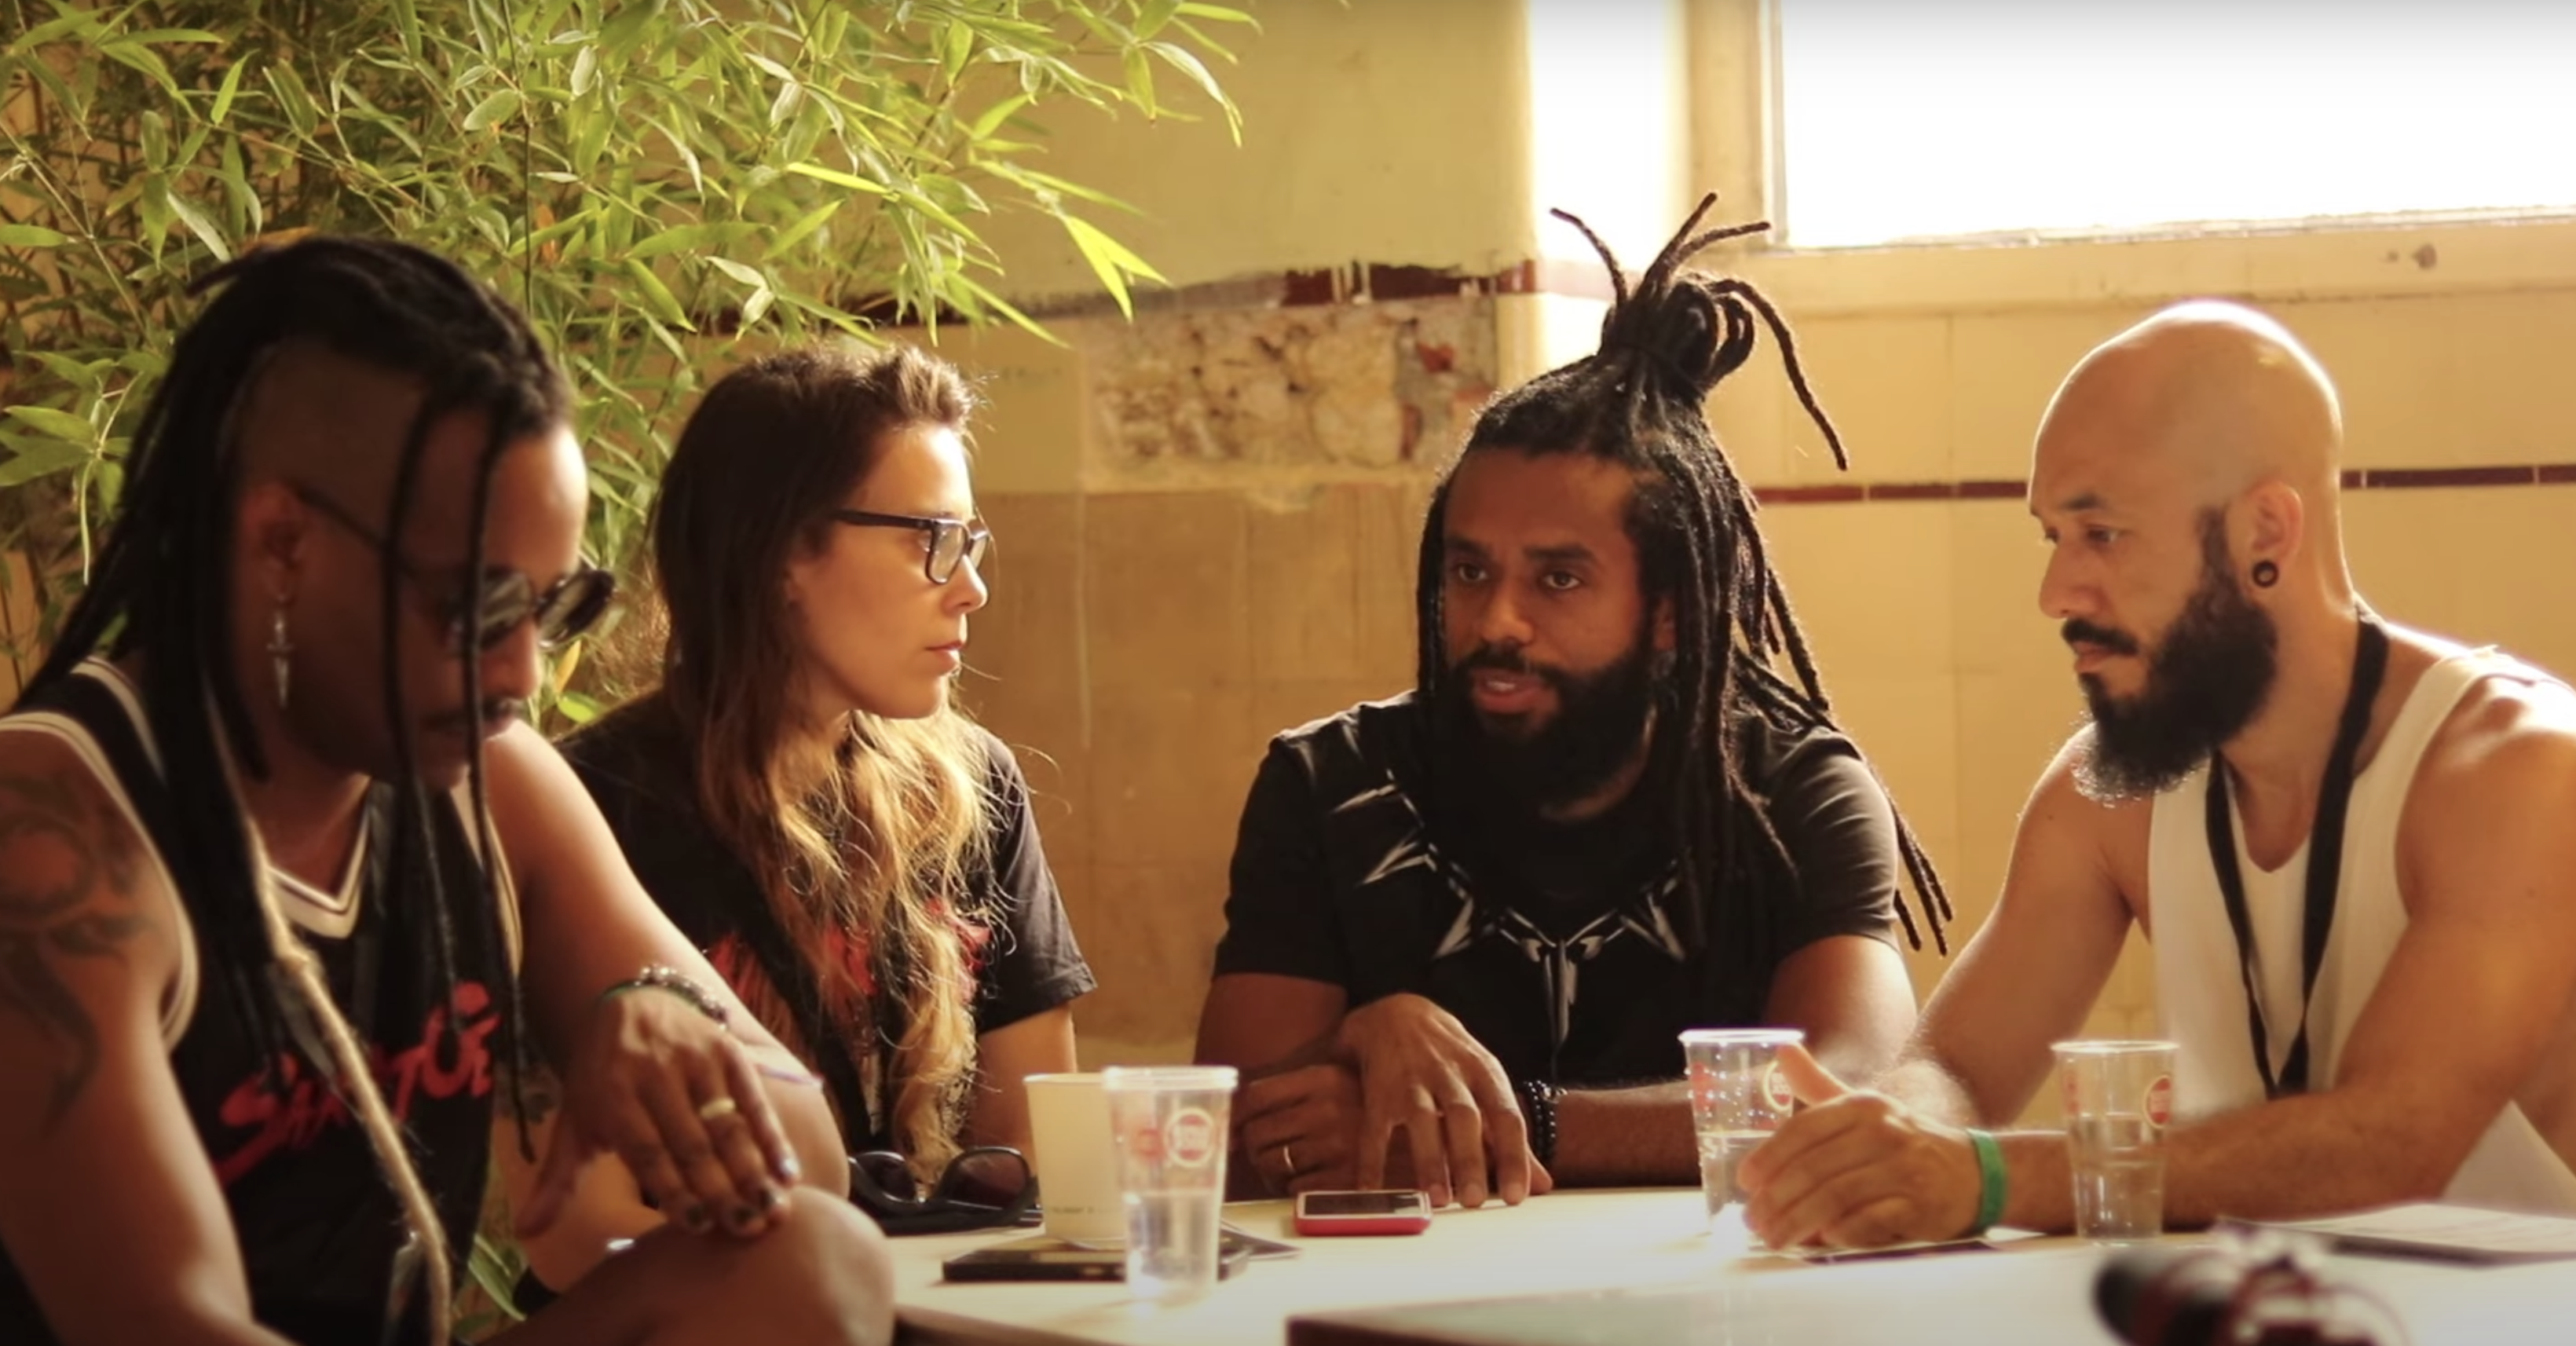 Black Pantera leva mensagem antirracista e anticolonial a Portugal: “somos sobreviventes”